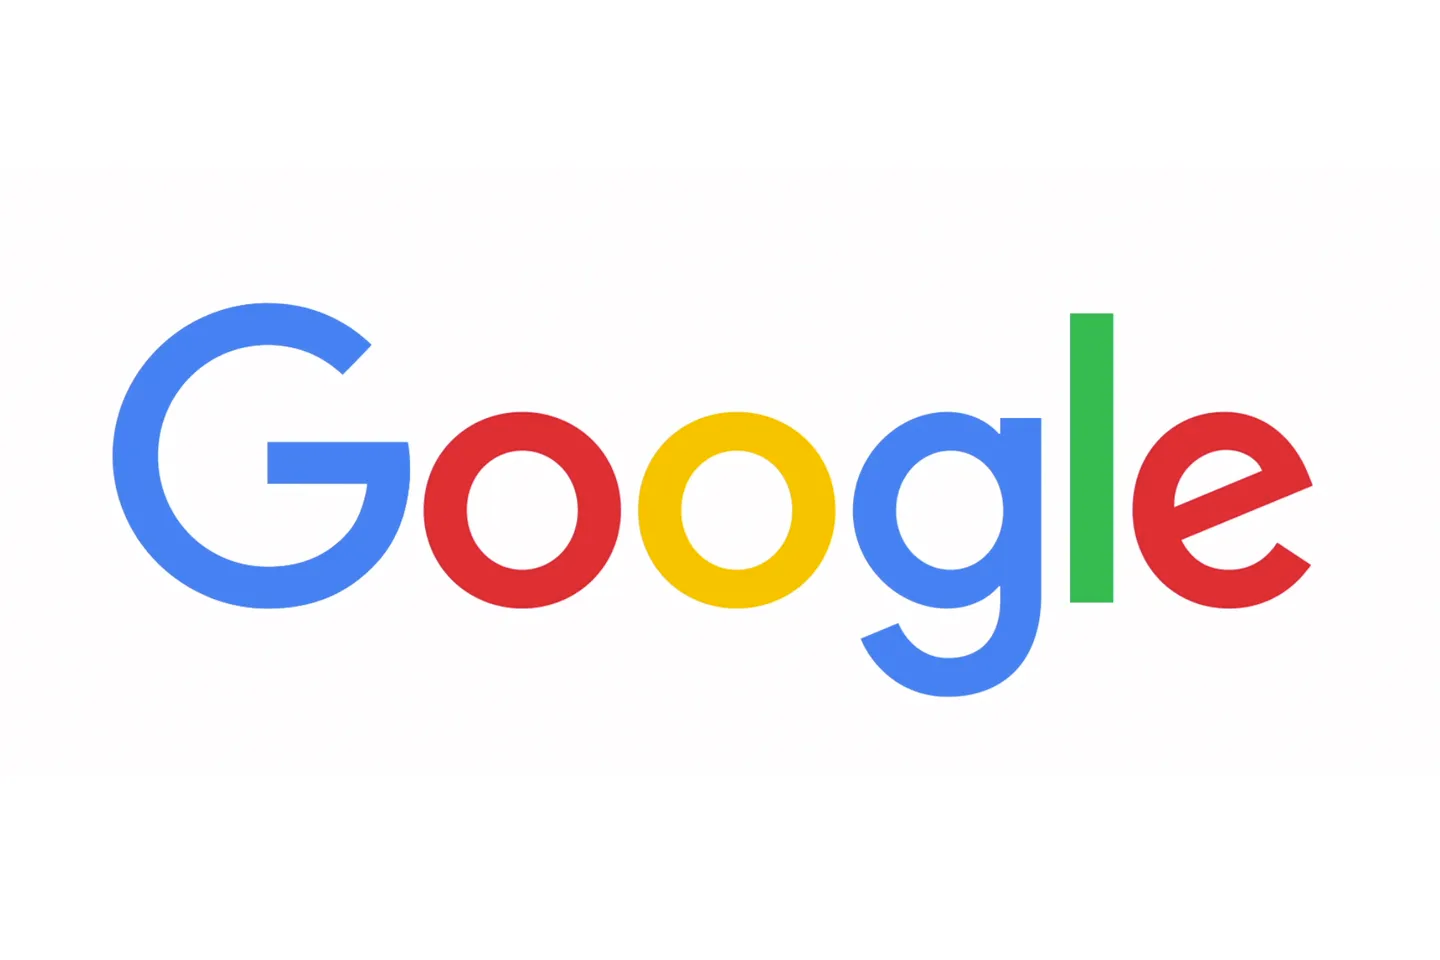 Google - Full Logo